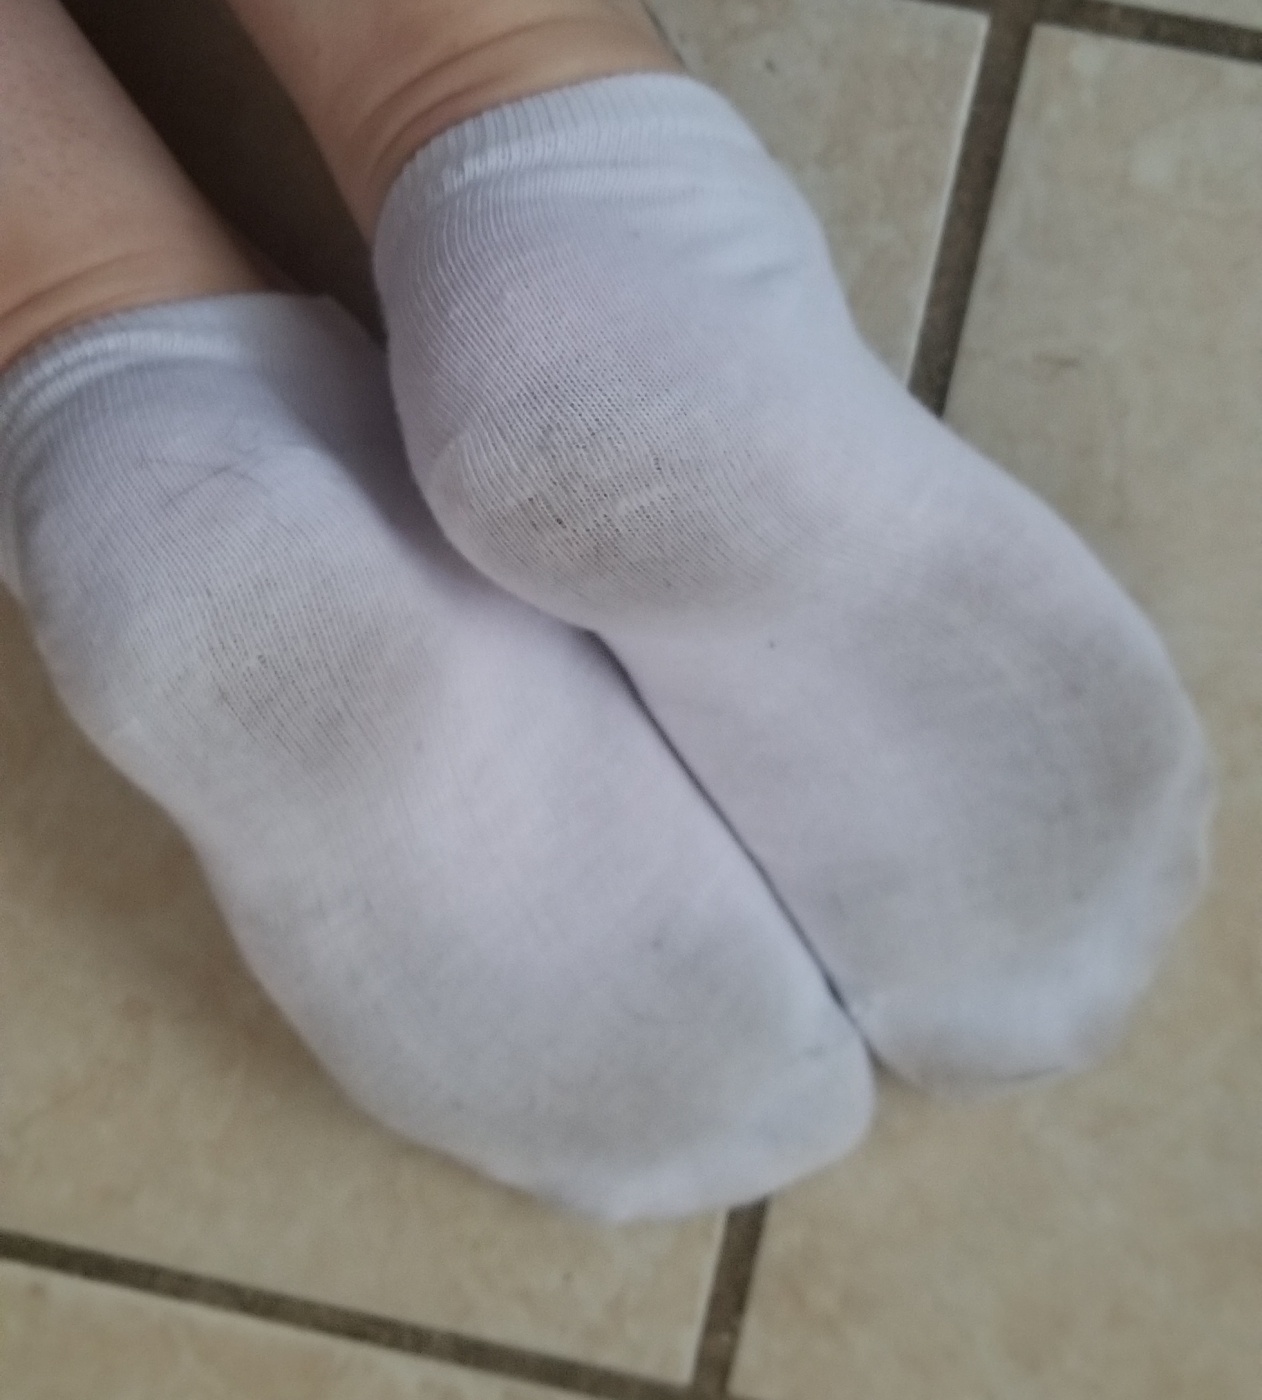 Thin white ankle socks